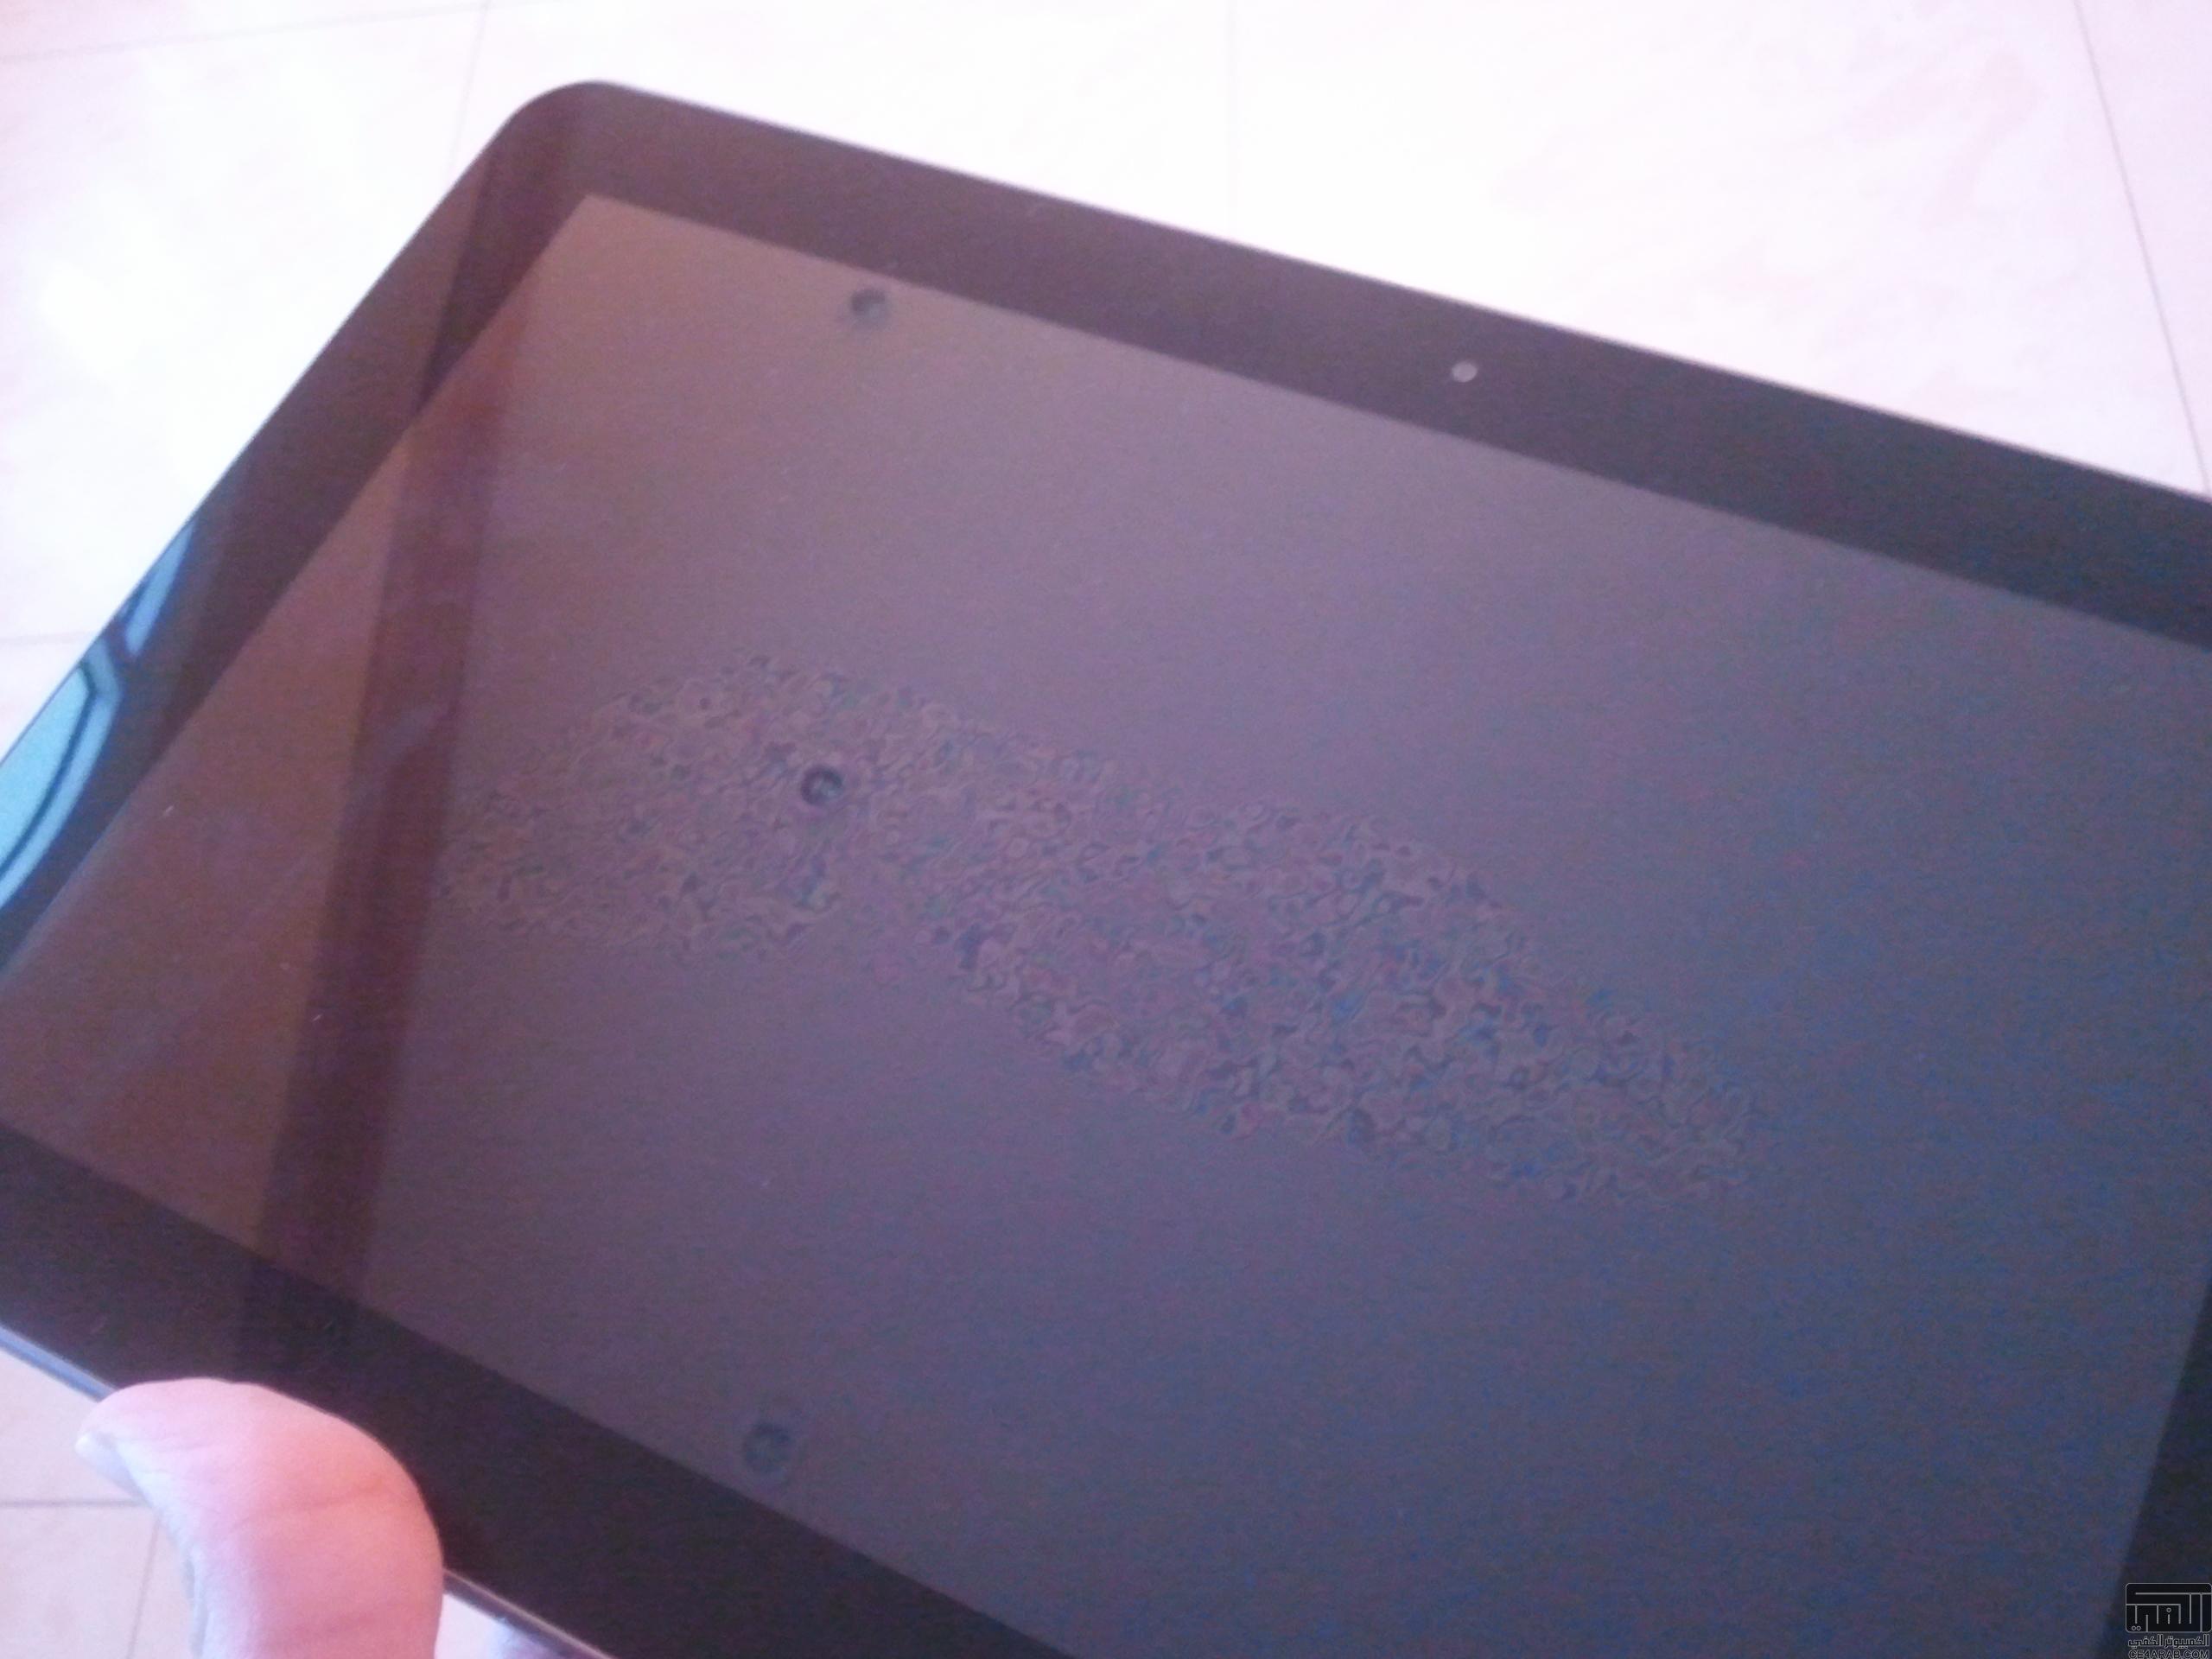 تجربتي في شراء Galaxy Tab 10.1 من أمزون,, وظهور مشكلة مصنعية في الجهاز !!